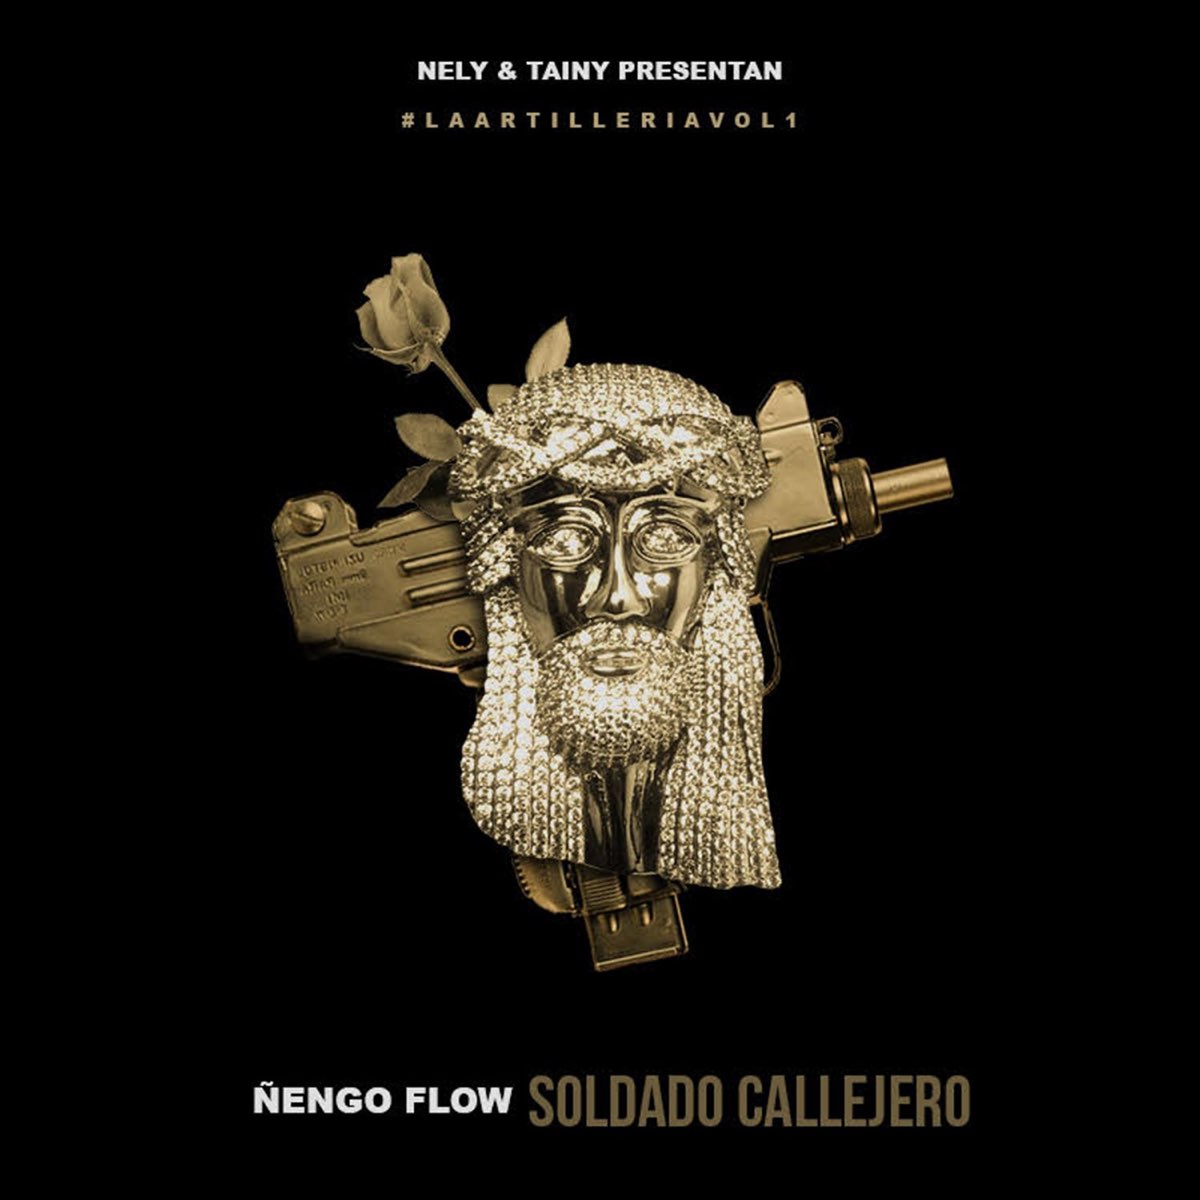 Soldado Callejero - Single by Ñengo Flow & Nelly "El Arma Secreta" on Apple  Music